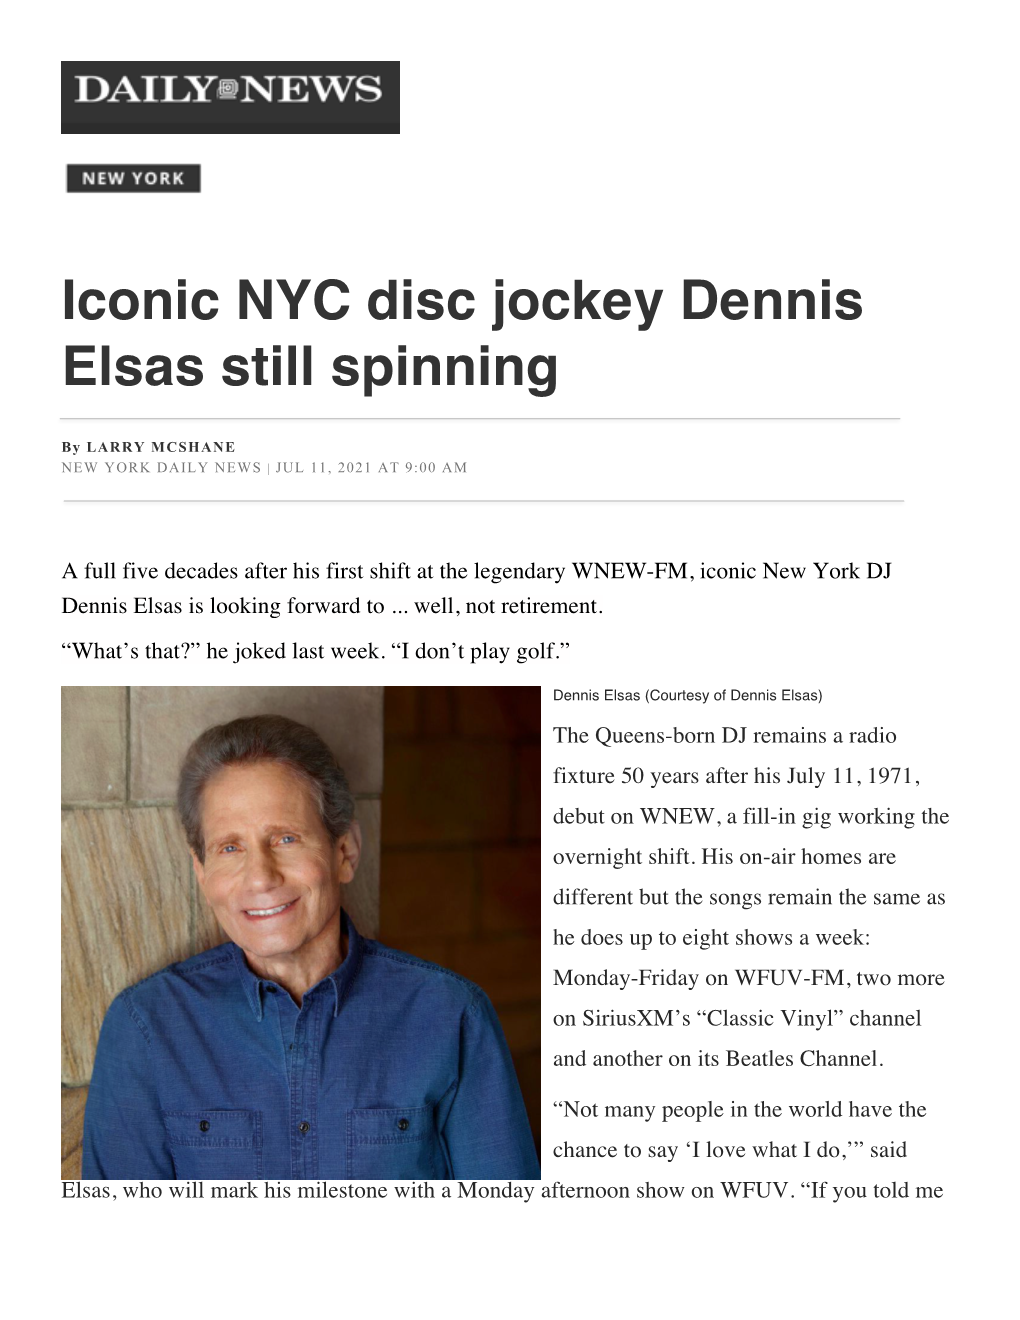 Iconic NYC Disc Jockey Dennis Elsas Still Spinning